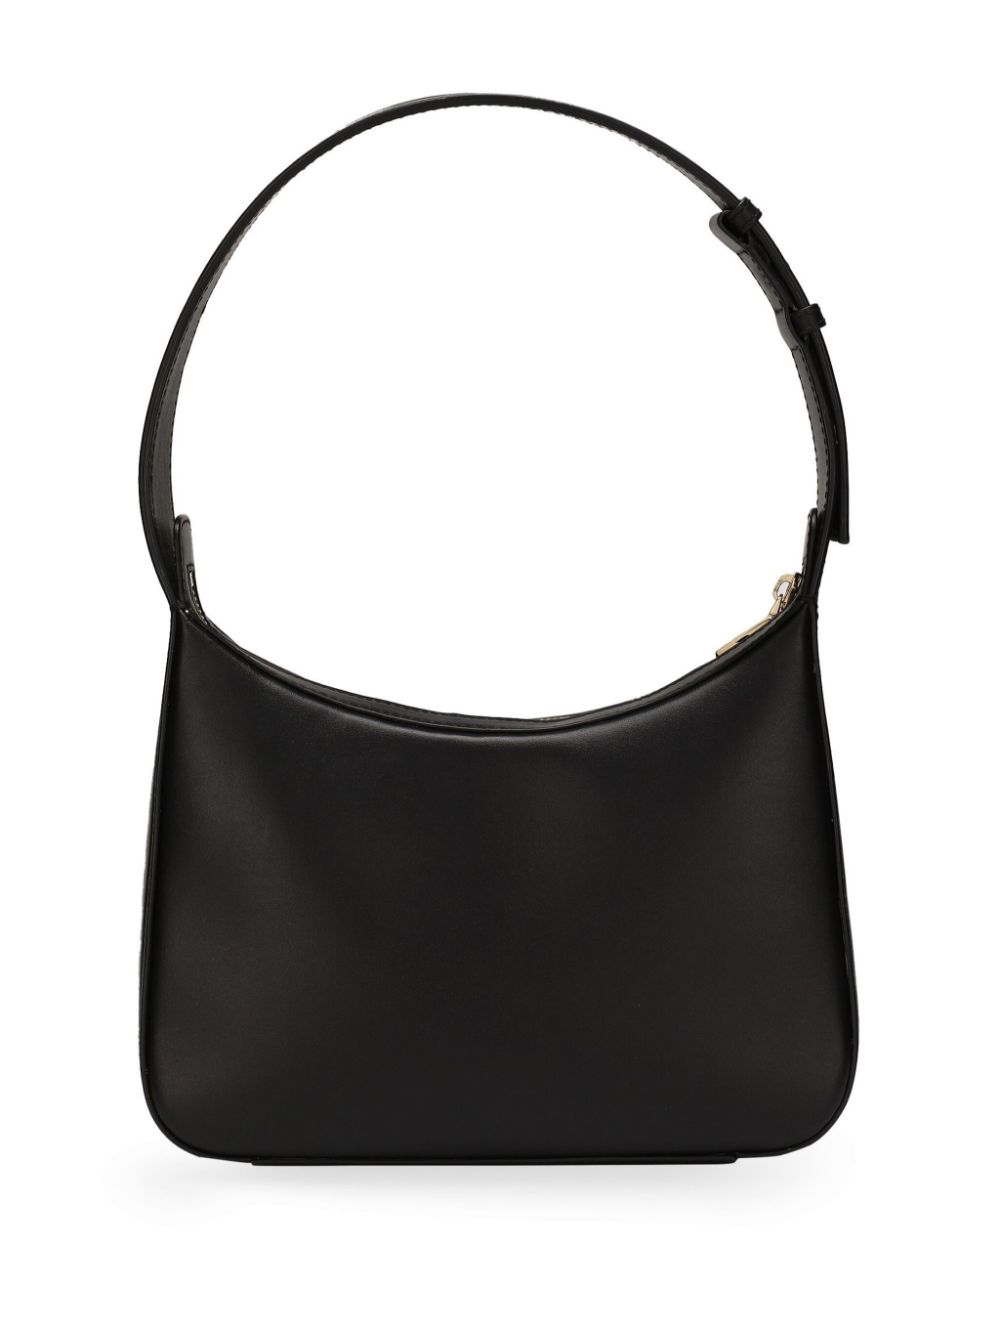 3.5 Elegant Shoulder Bag in Black Calfskin for Women